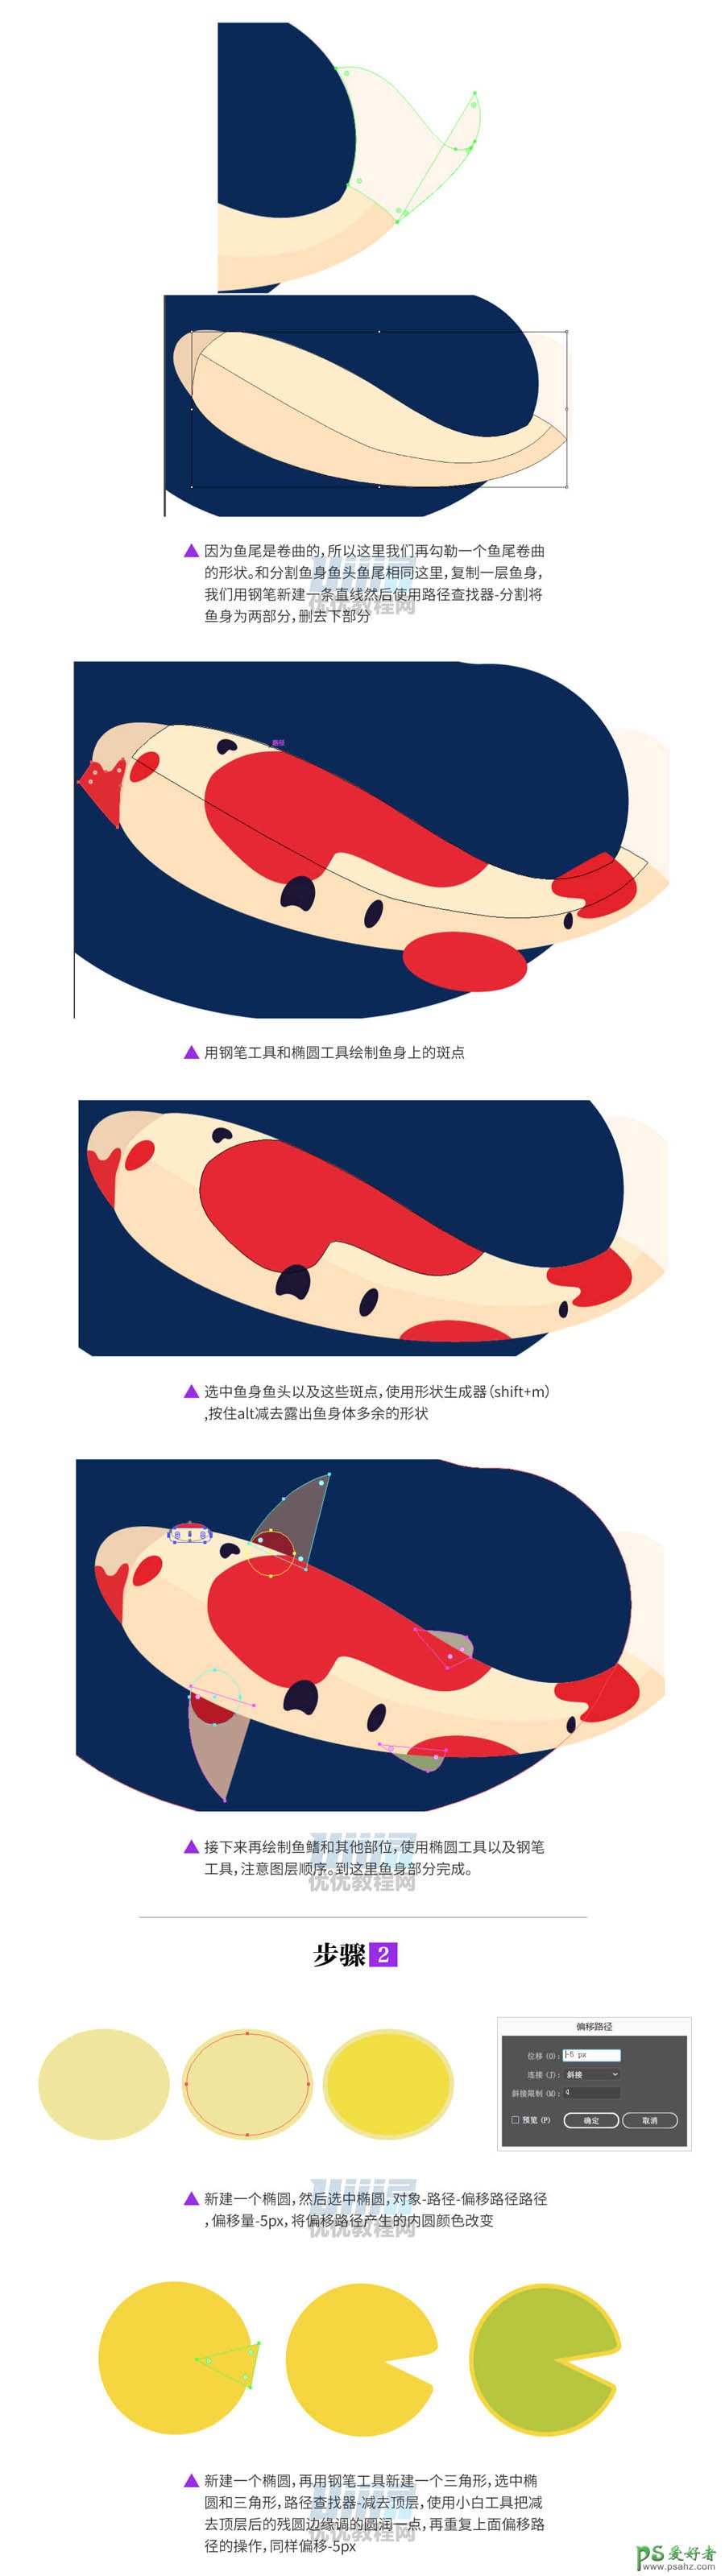 PS结合AI软件手绘质感风格的荷塘鲤鱼插画图片。